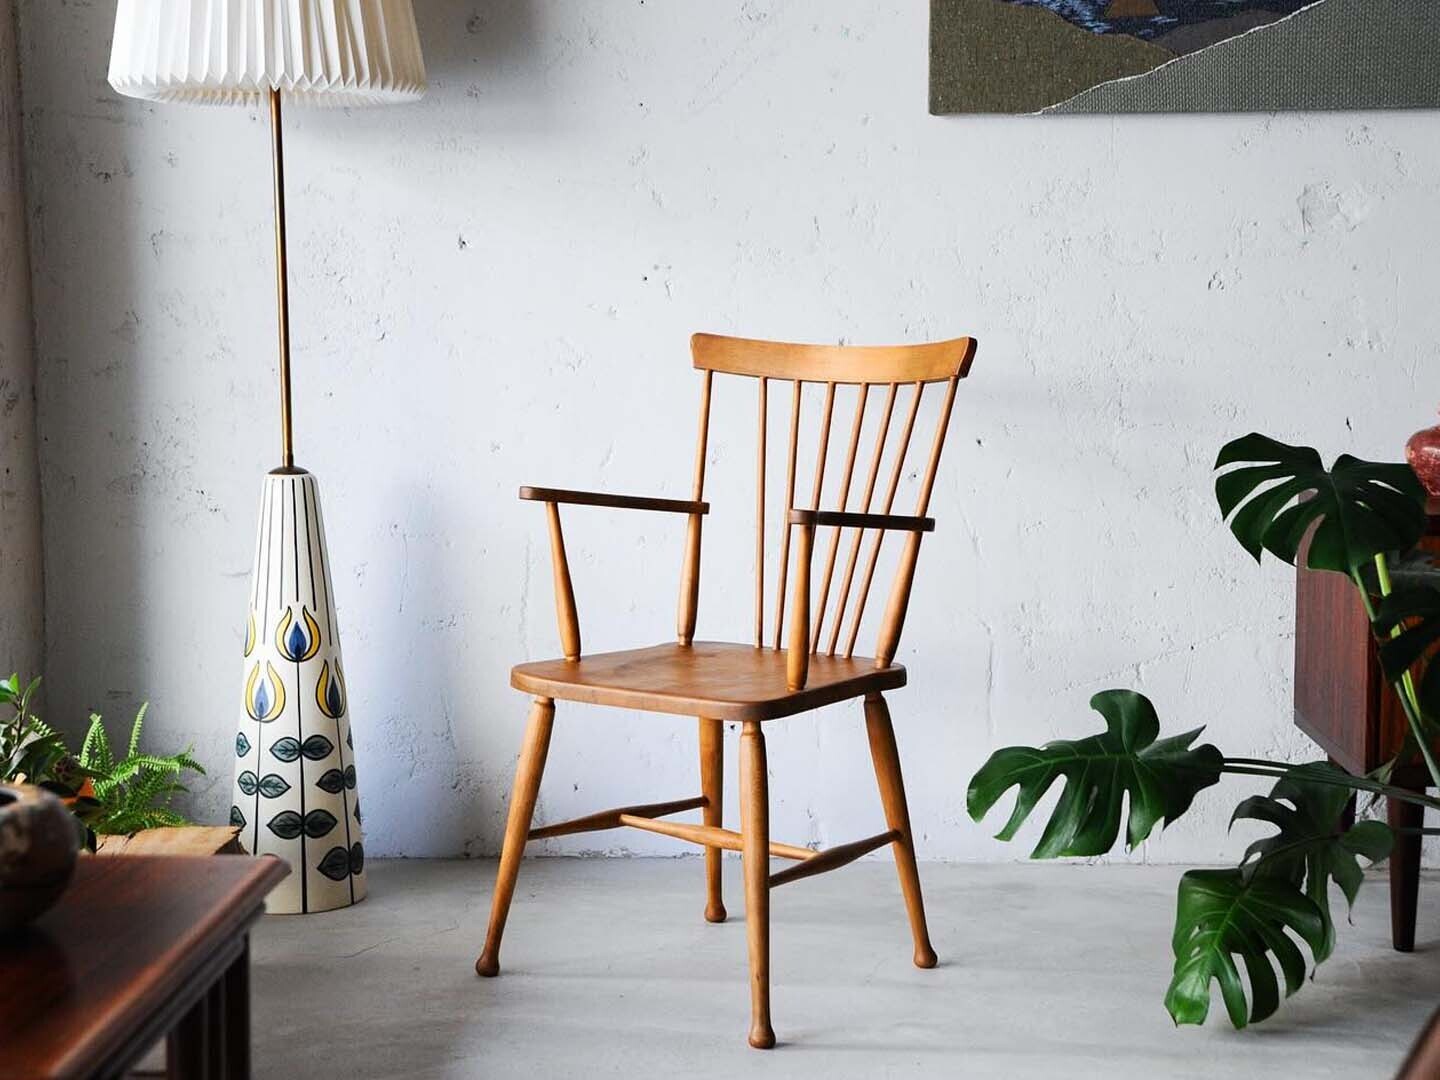 丹麥夏克式風格溫莎椅